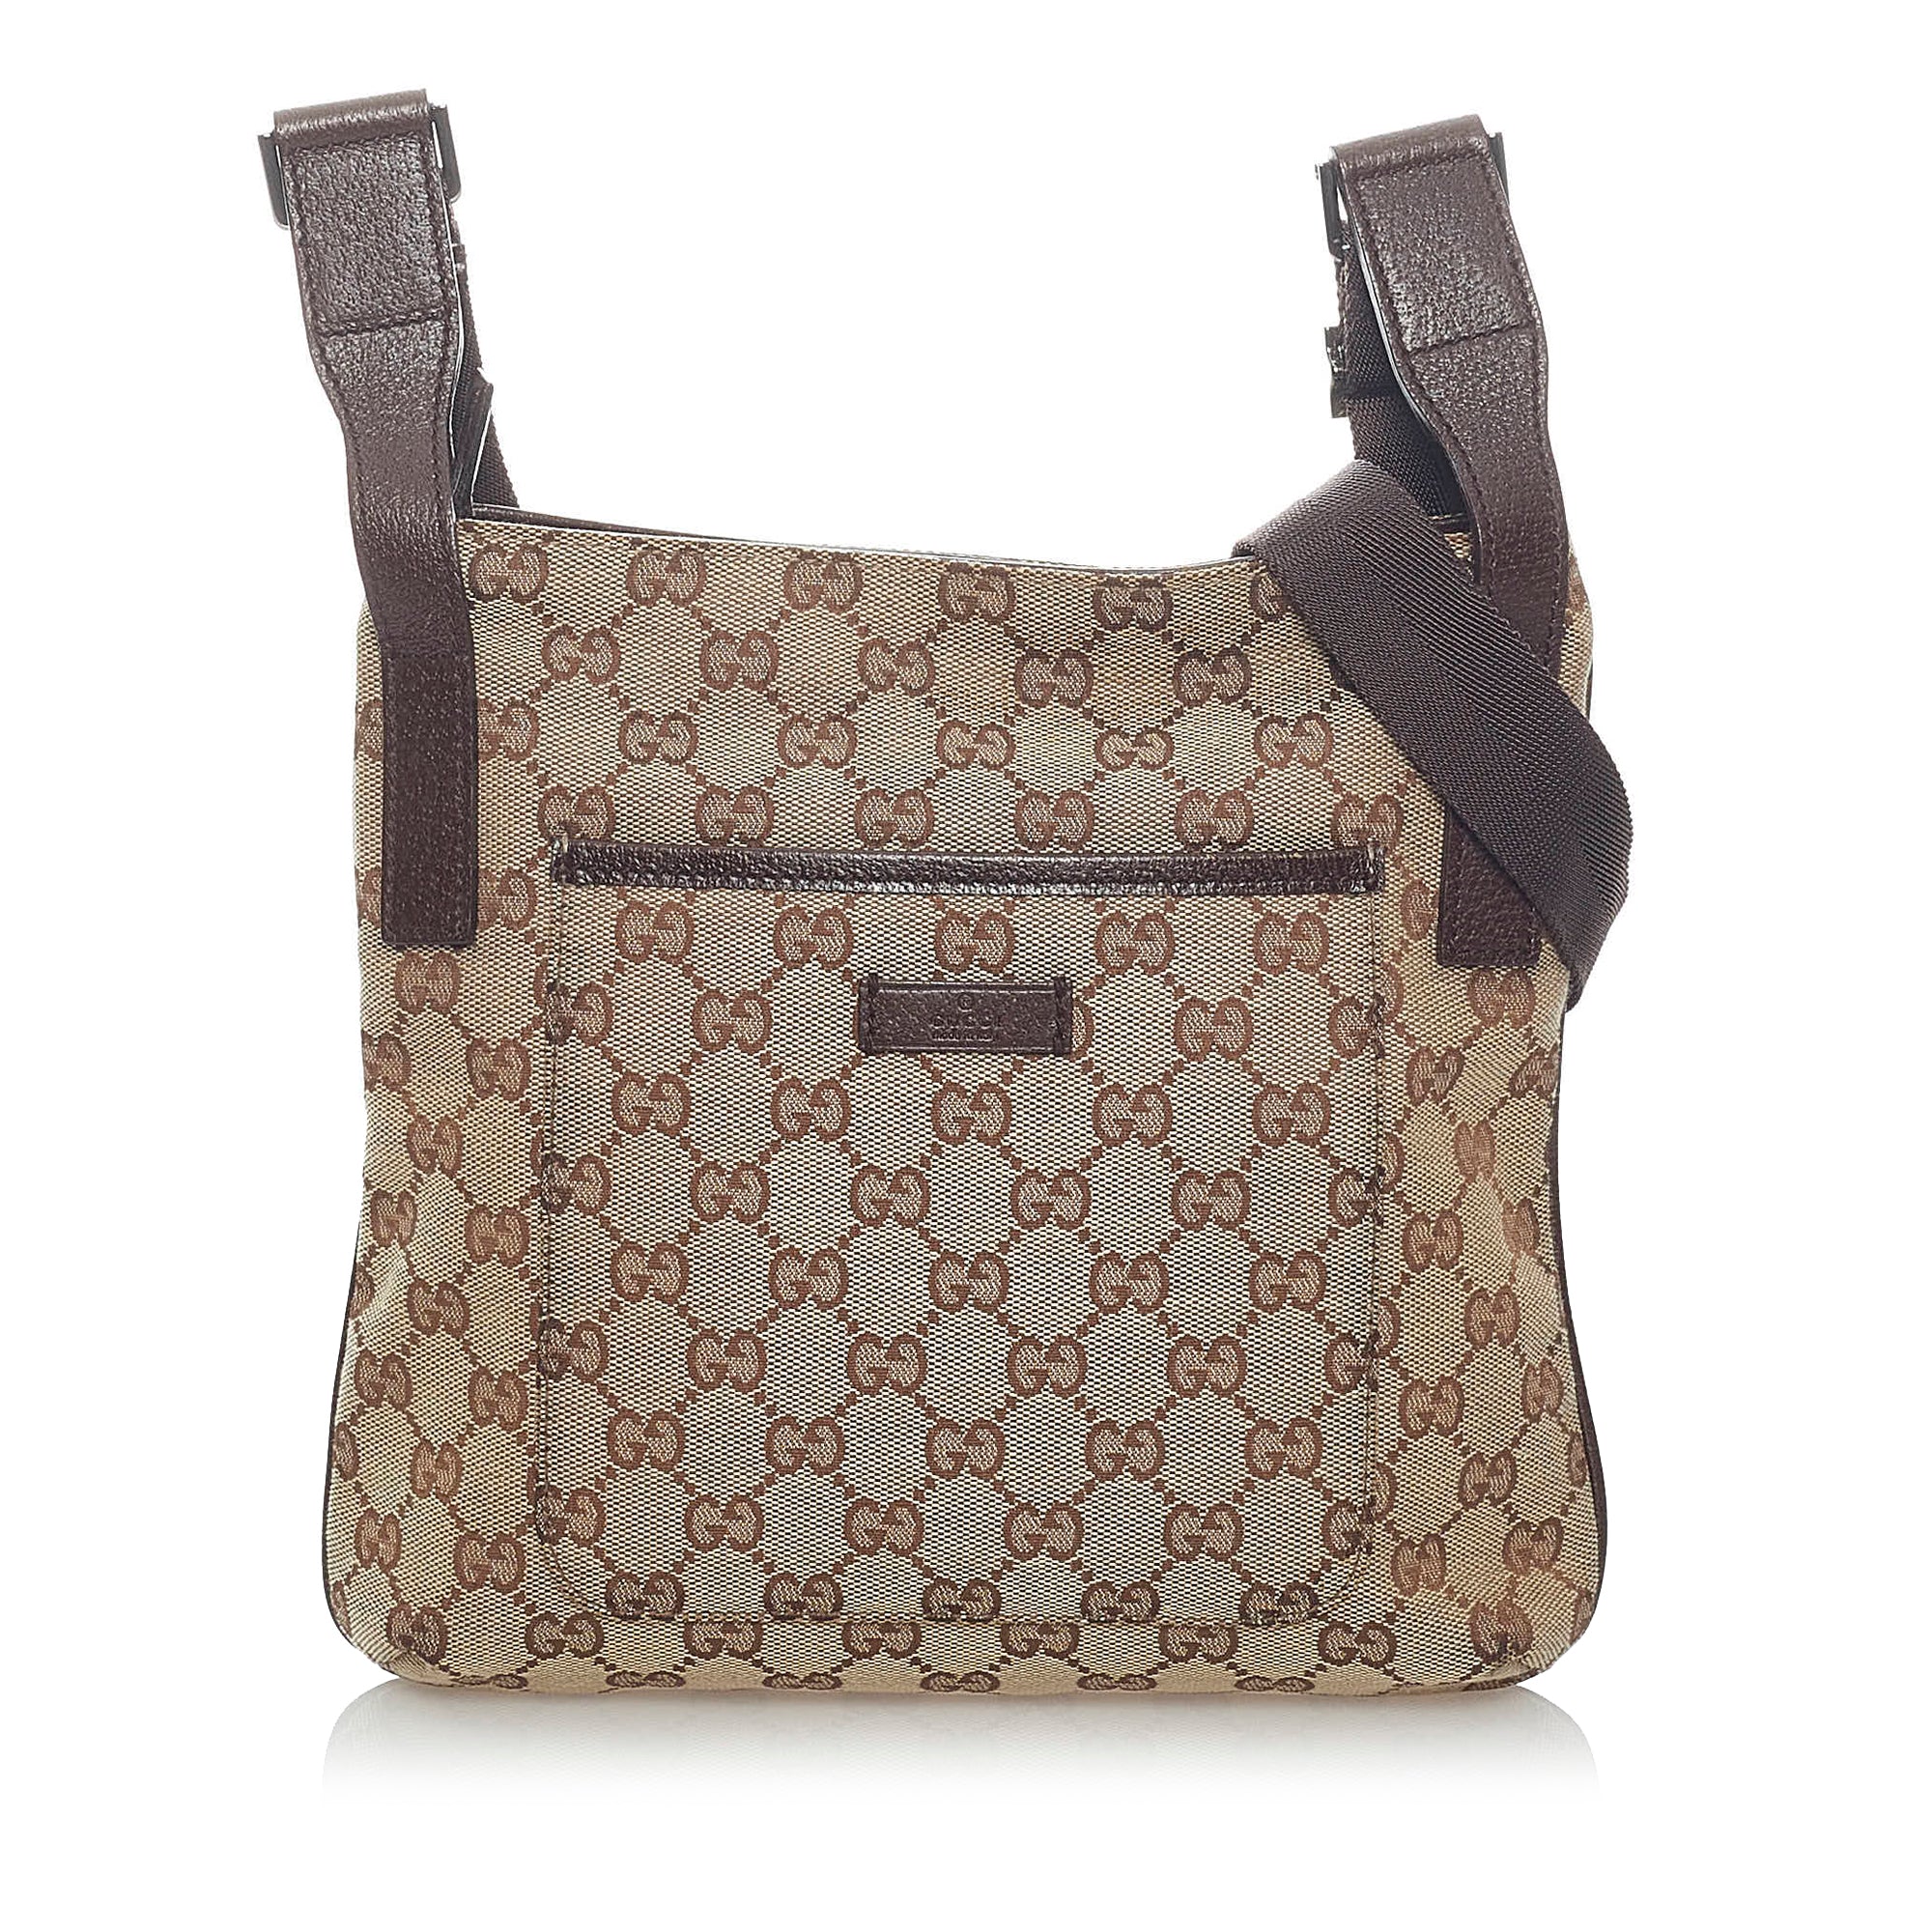 Gucci 'Ophidia Small' handbag, IetpShops